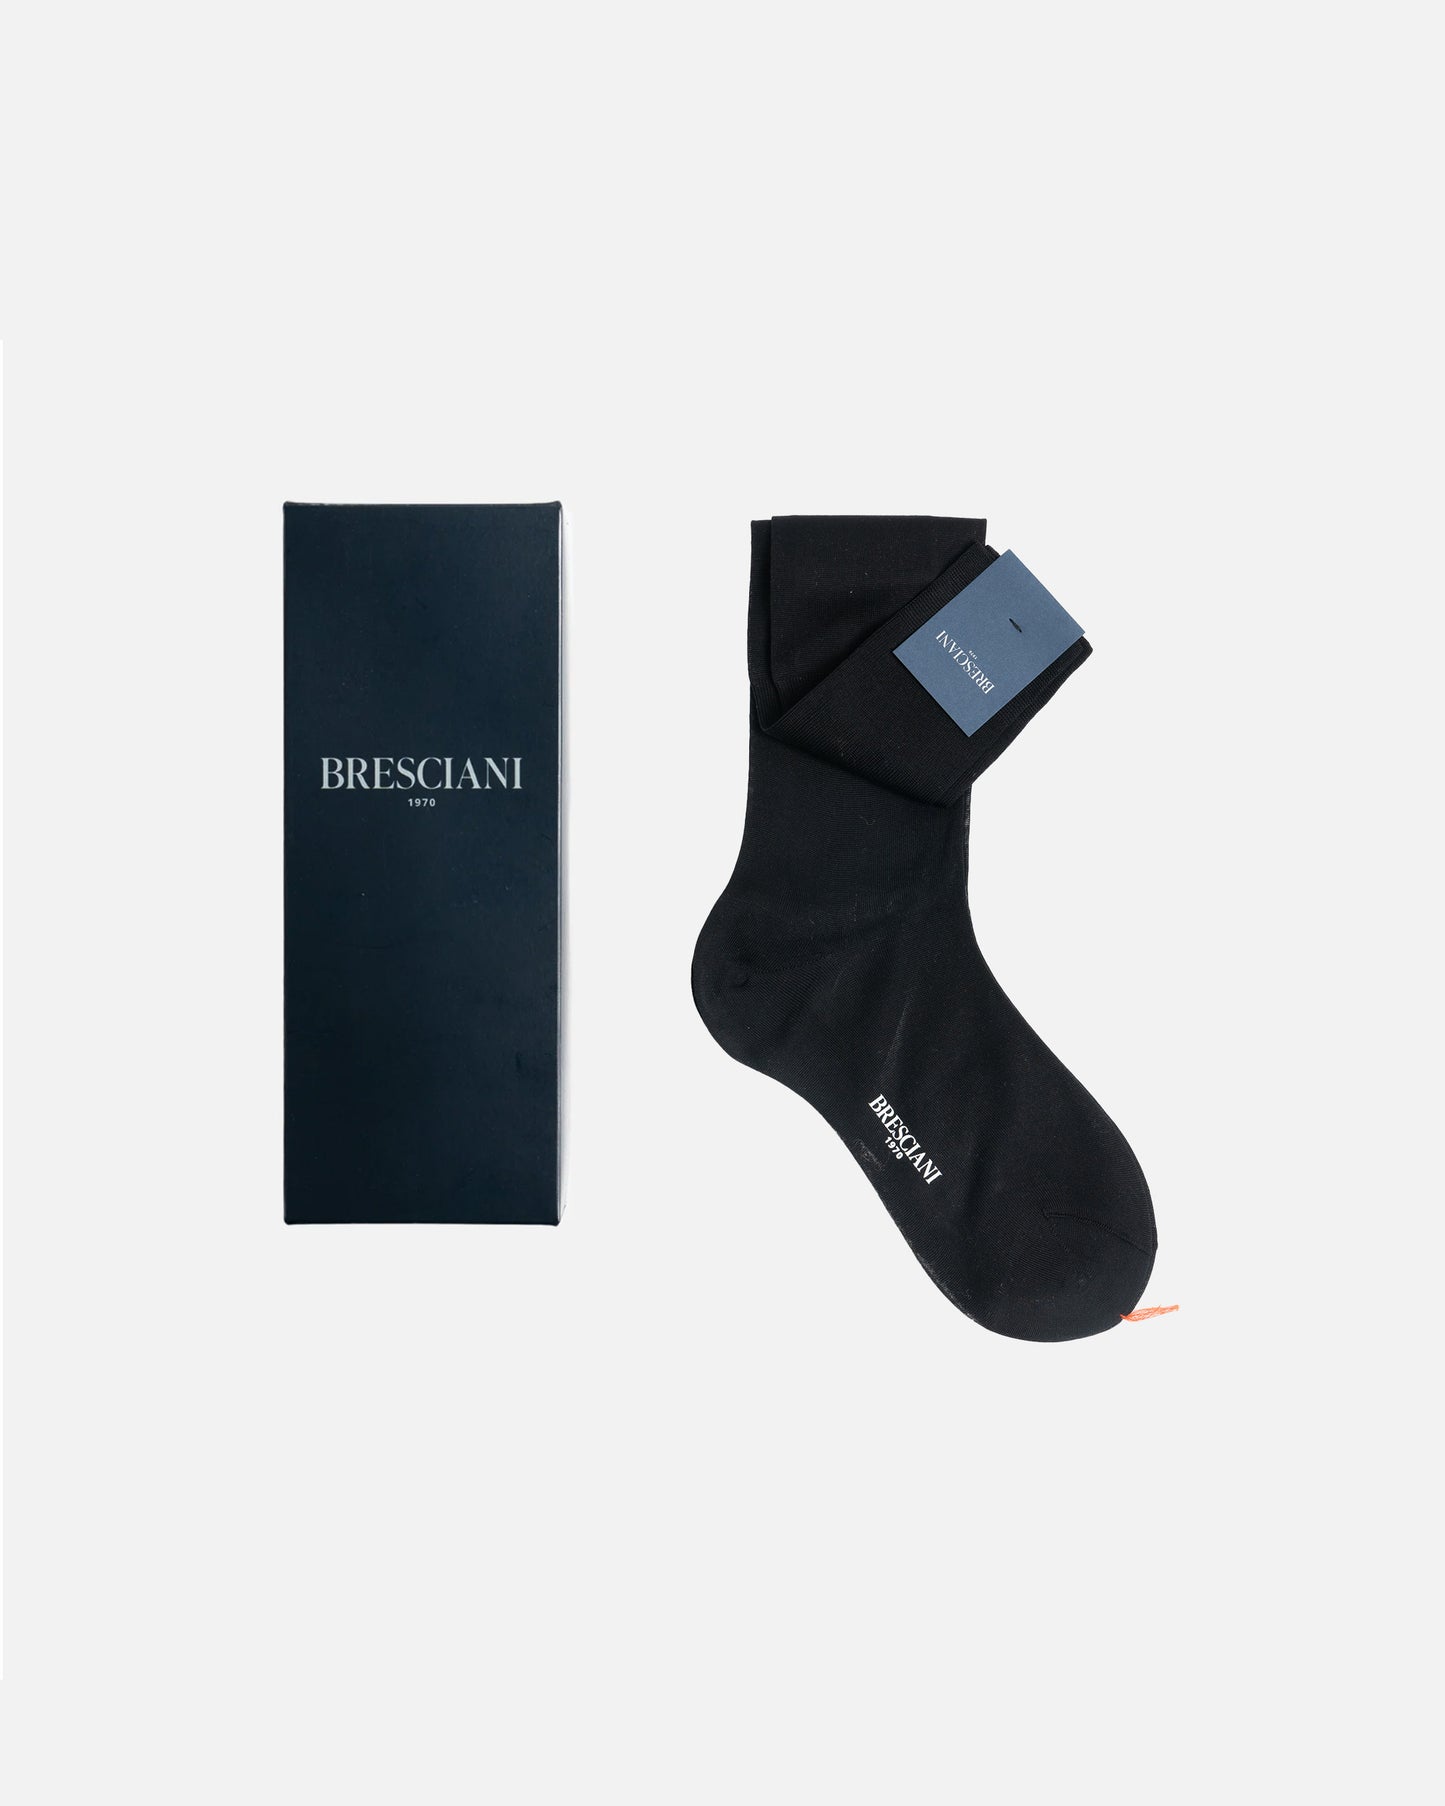 Bresciani 014 Nero Over The Calf Cotton socks